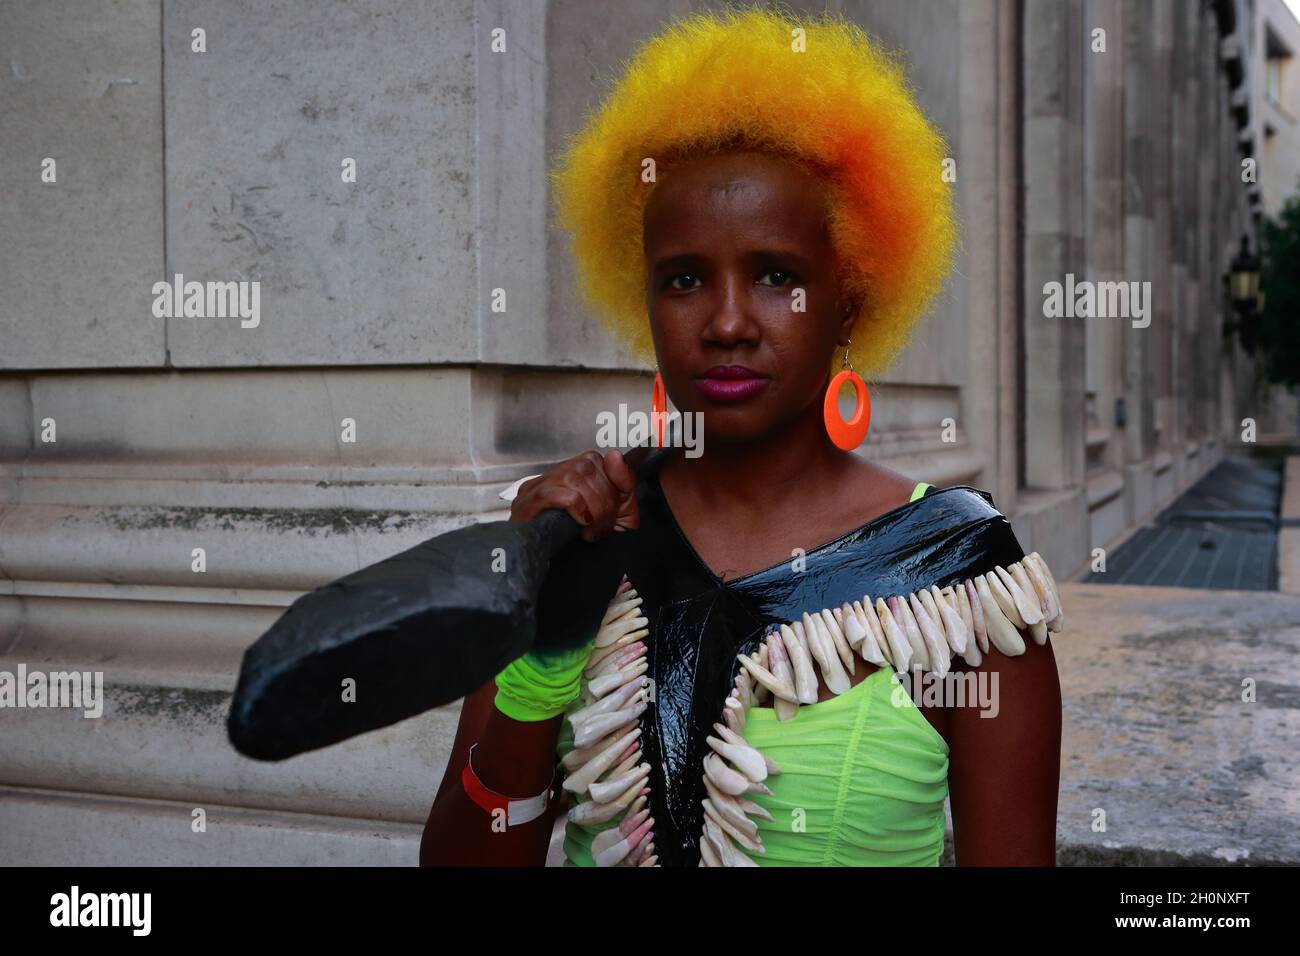 Londra (Regno Unito): Settimana della moda in Africa 2021. Fuori e fuori, i partecipanti posano per la macchina fotografica all'esterno della Freemasons Hall, dove si è tenuto l'evento di moda Africa.WO Foto Stock